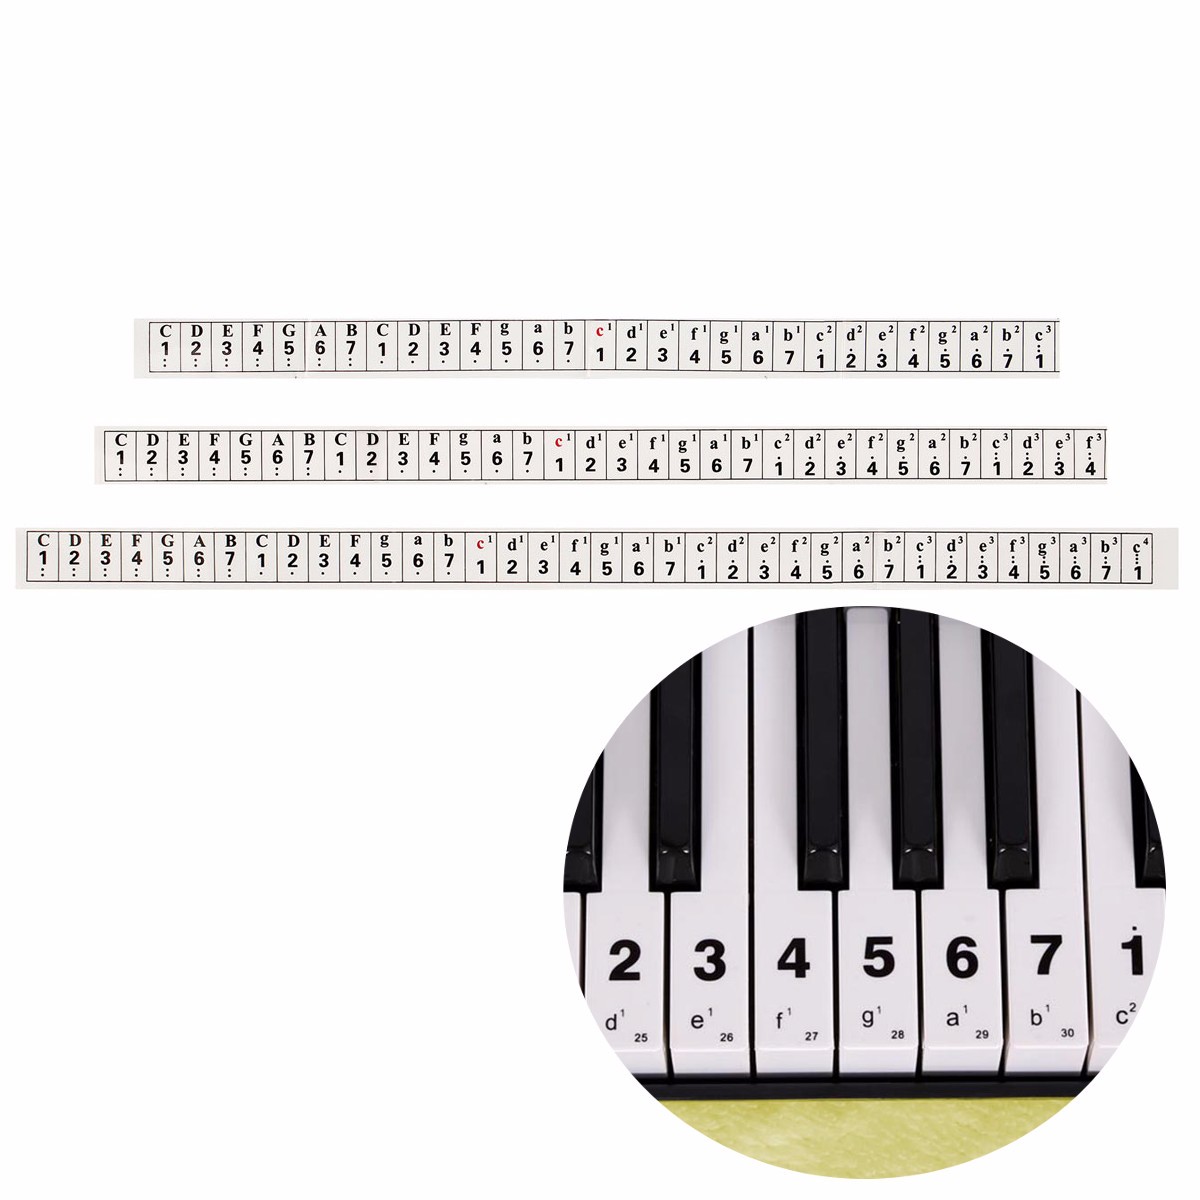 На клавишах тургенева. Ноты на клавиатуре синтезатора 61 клавиша. Ноты для 61 клавиши на синтезаторе. Ноты на синтезаторе 61 клавиша. Ноты на синтезатор 54 клавиши.